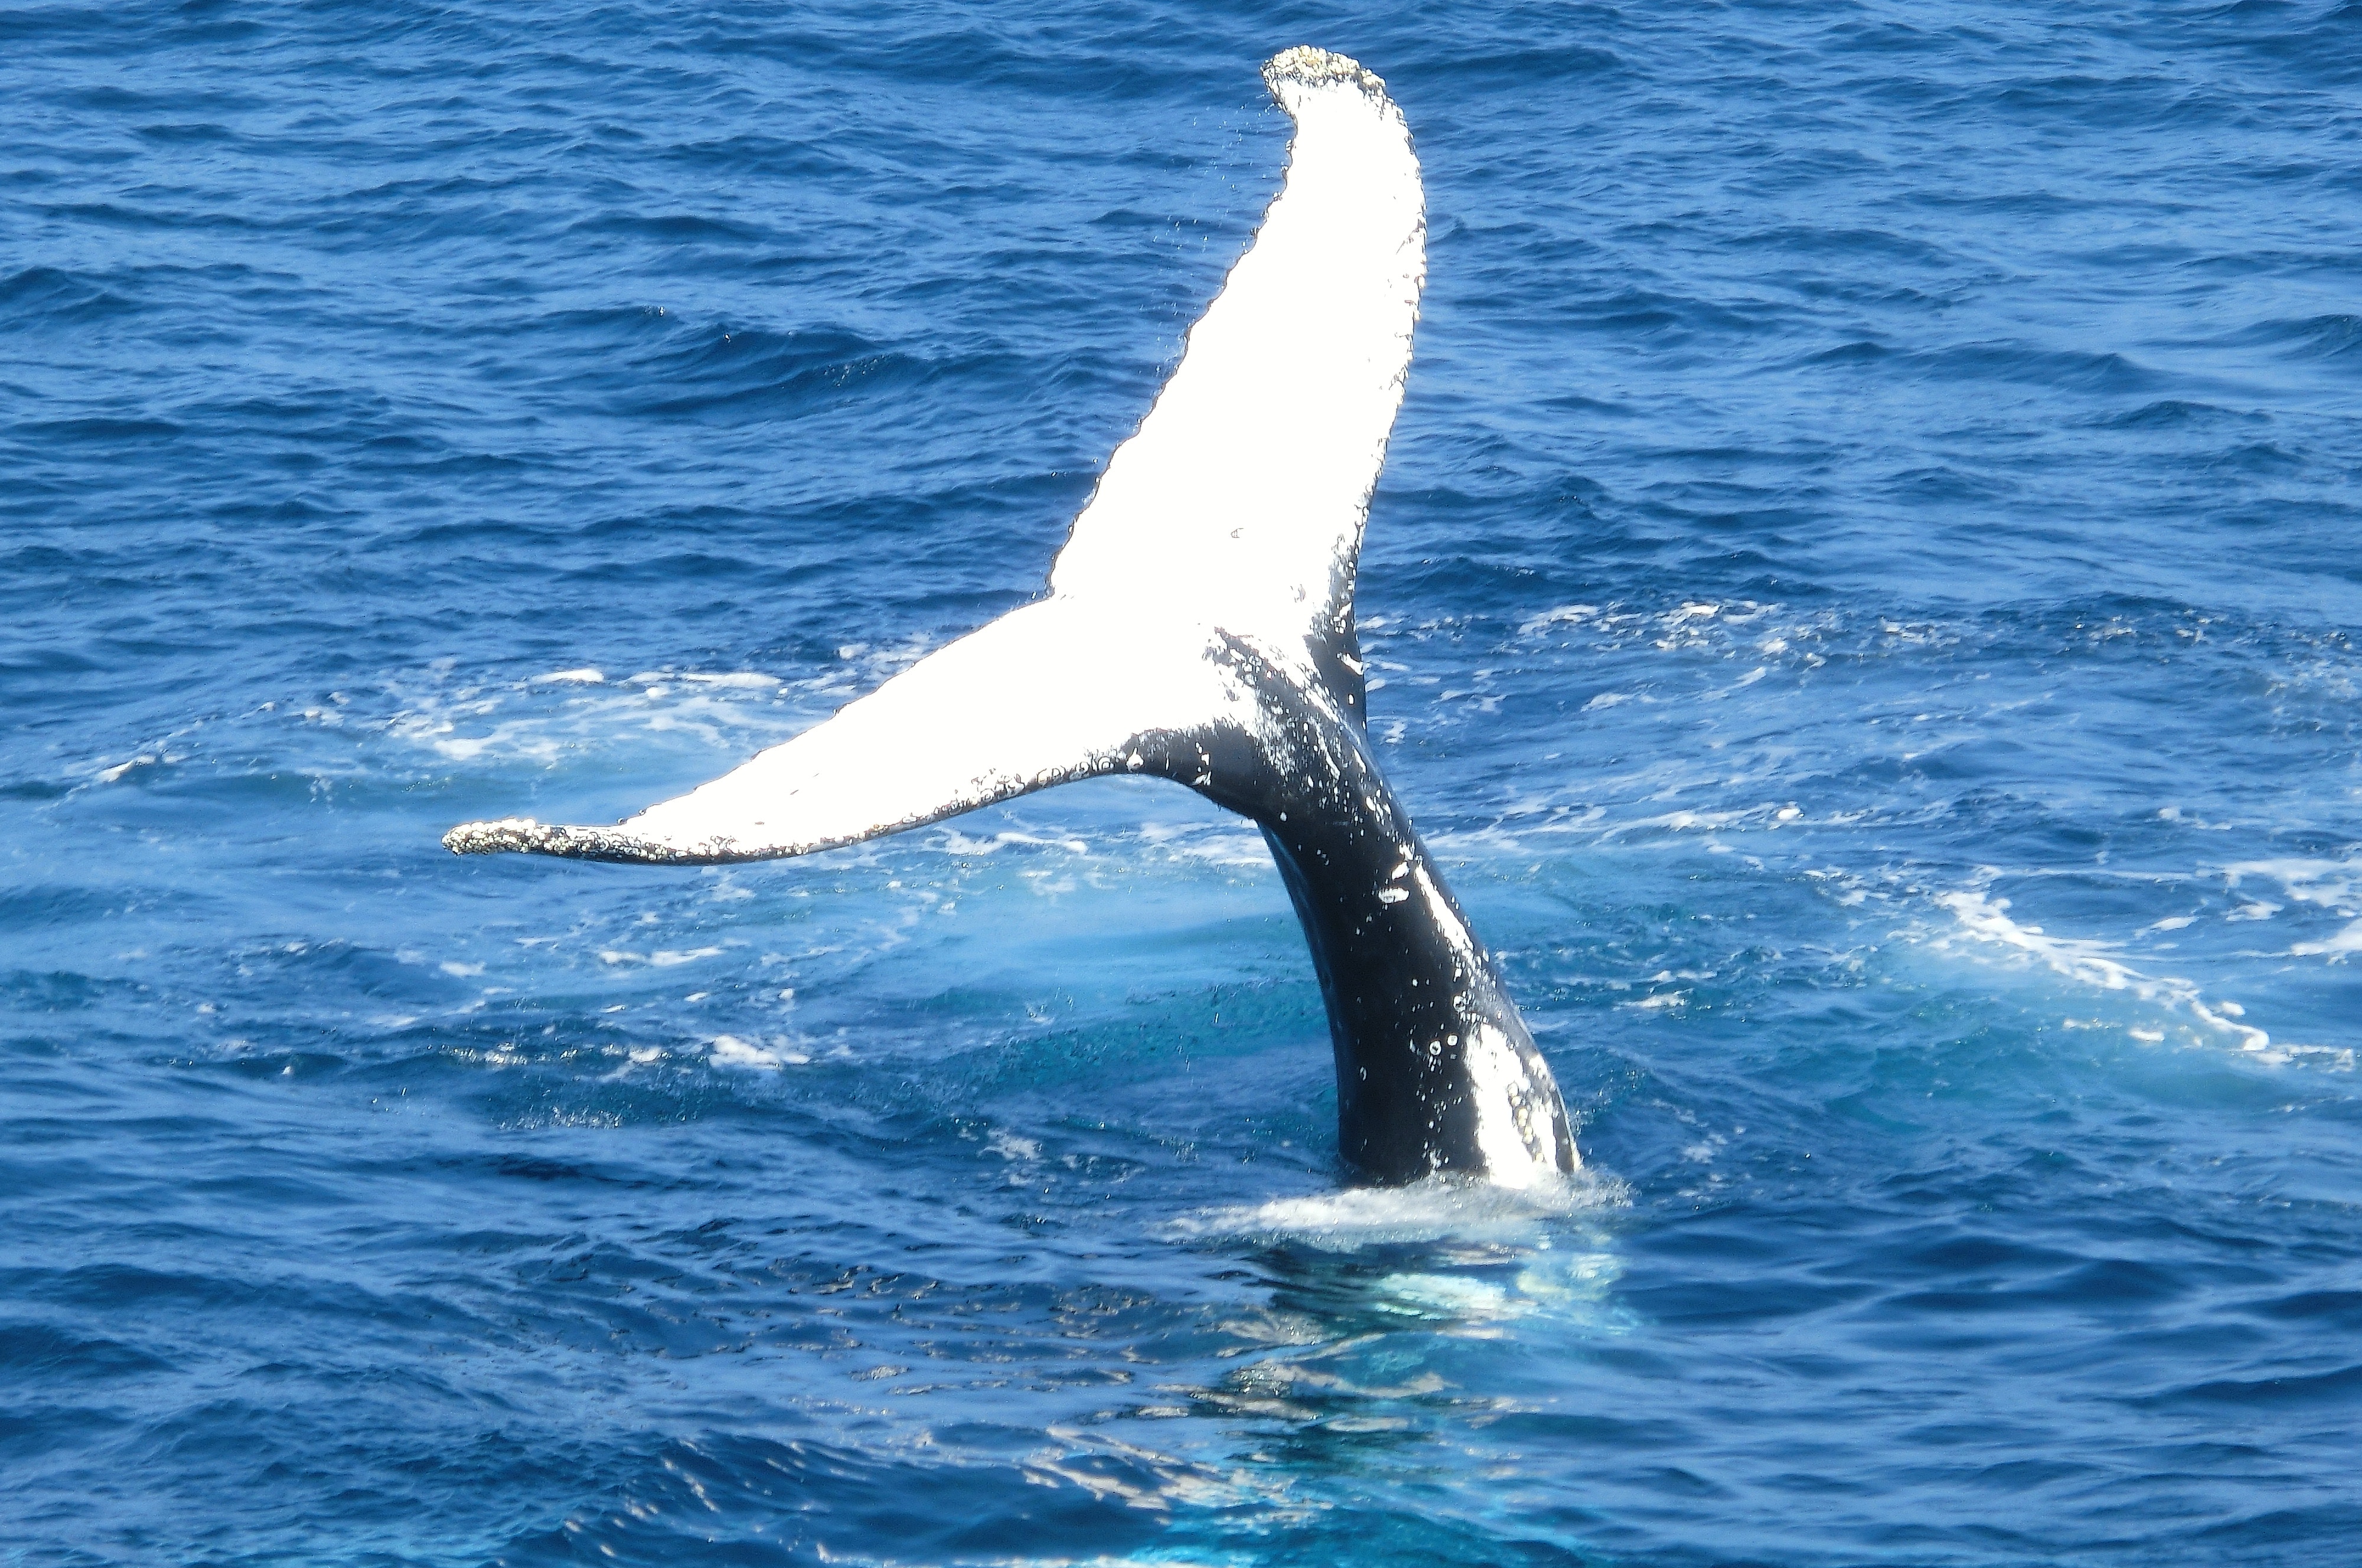 kaikoura, whale watch kaikoura, kaikoura whale watching, whale watching in kaikoura, kaikoura road, kaikoura whale watch, whale watching boat or plane?